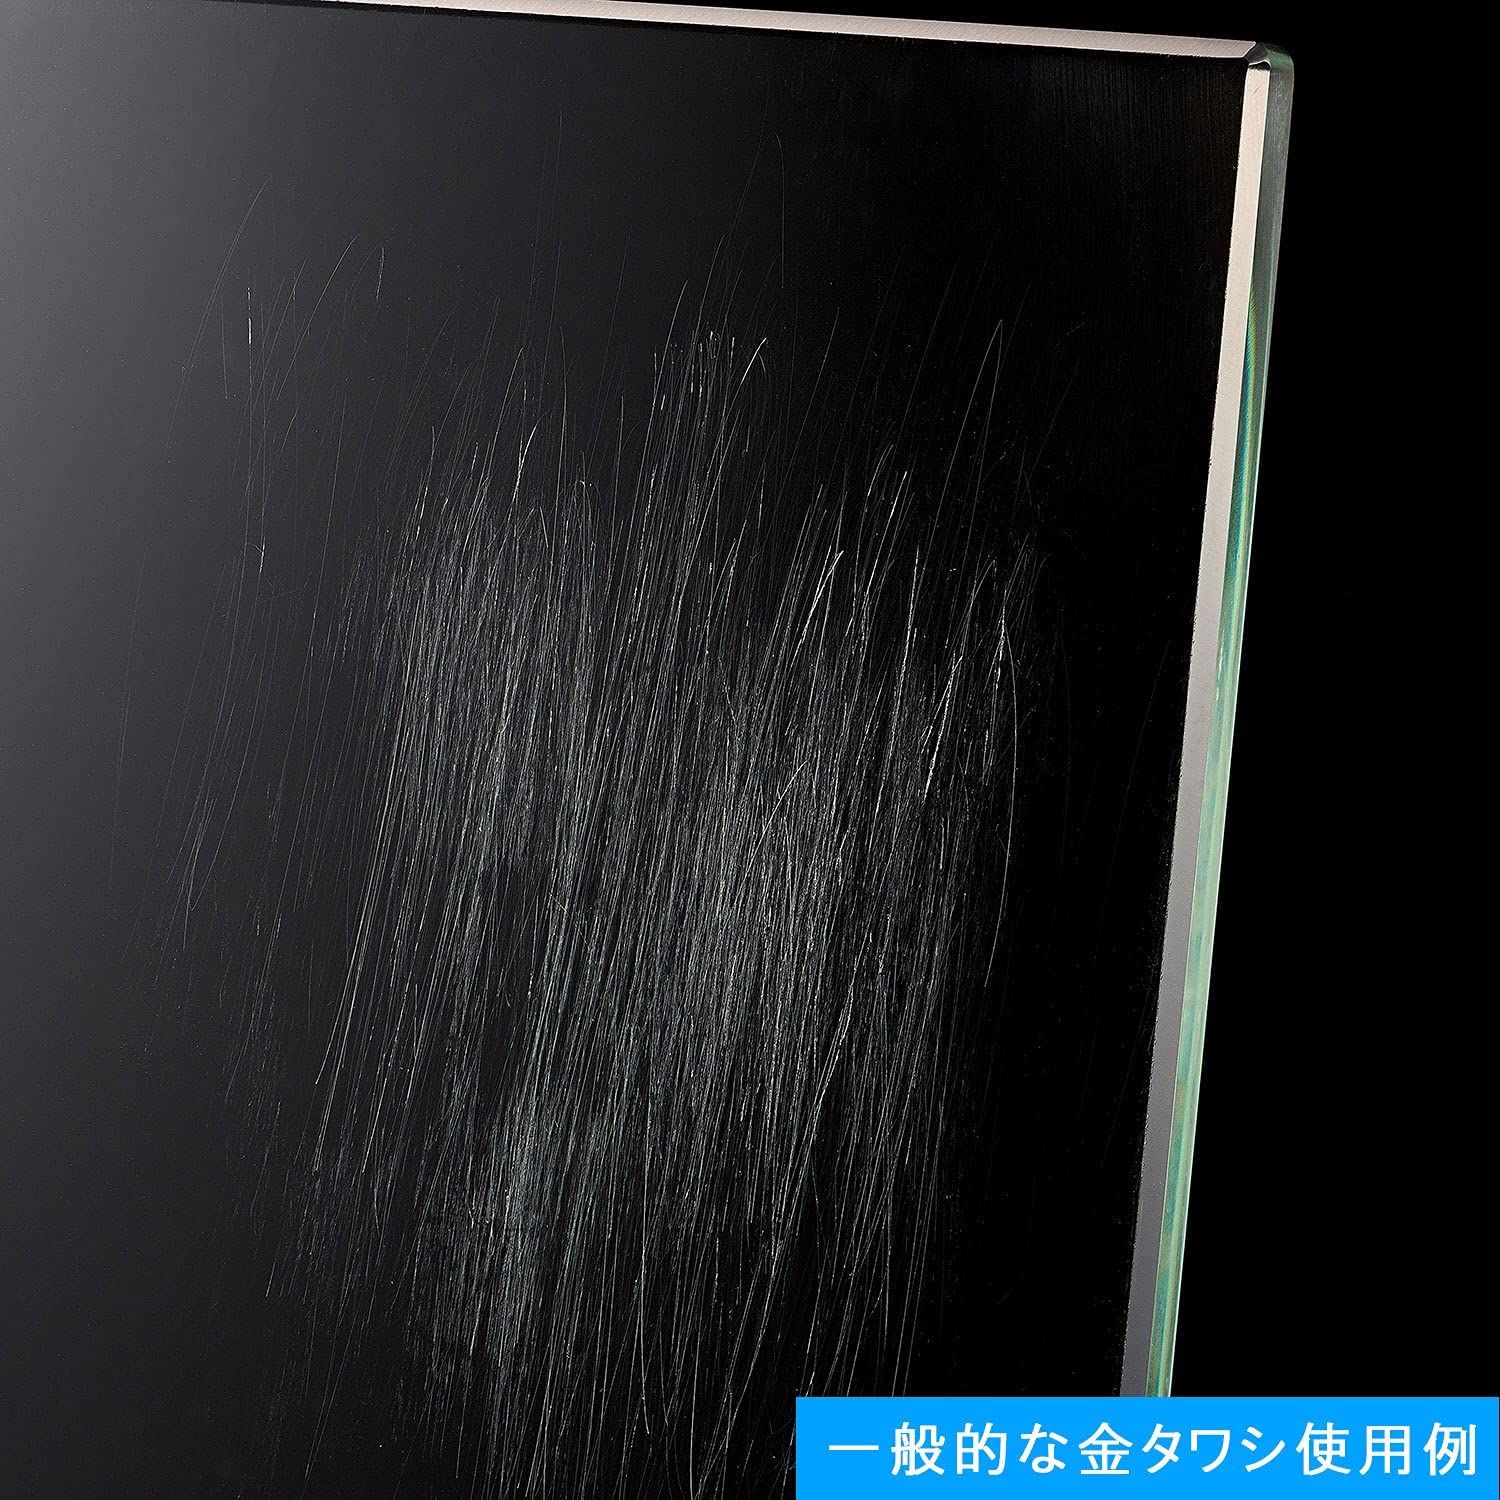 【預購】日本製 COGIT 廚房清潔IH玻璃檯面用吸附去除粘土 - Cnjpkitchen ❤️ 🇯🇵日本廚具 家居生活雜貨店